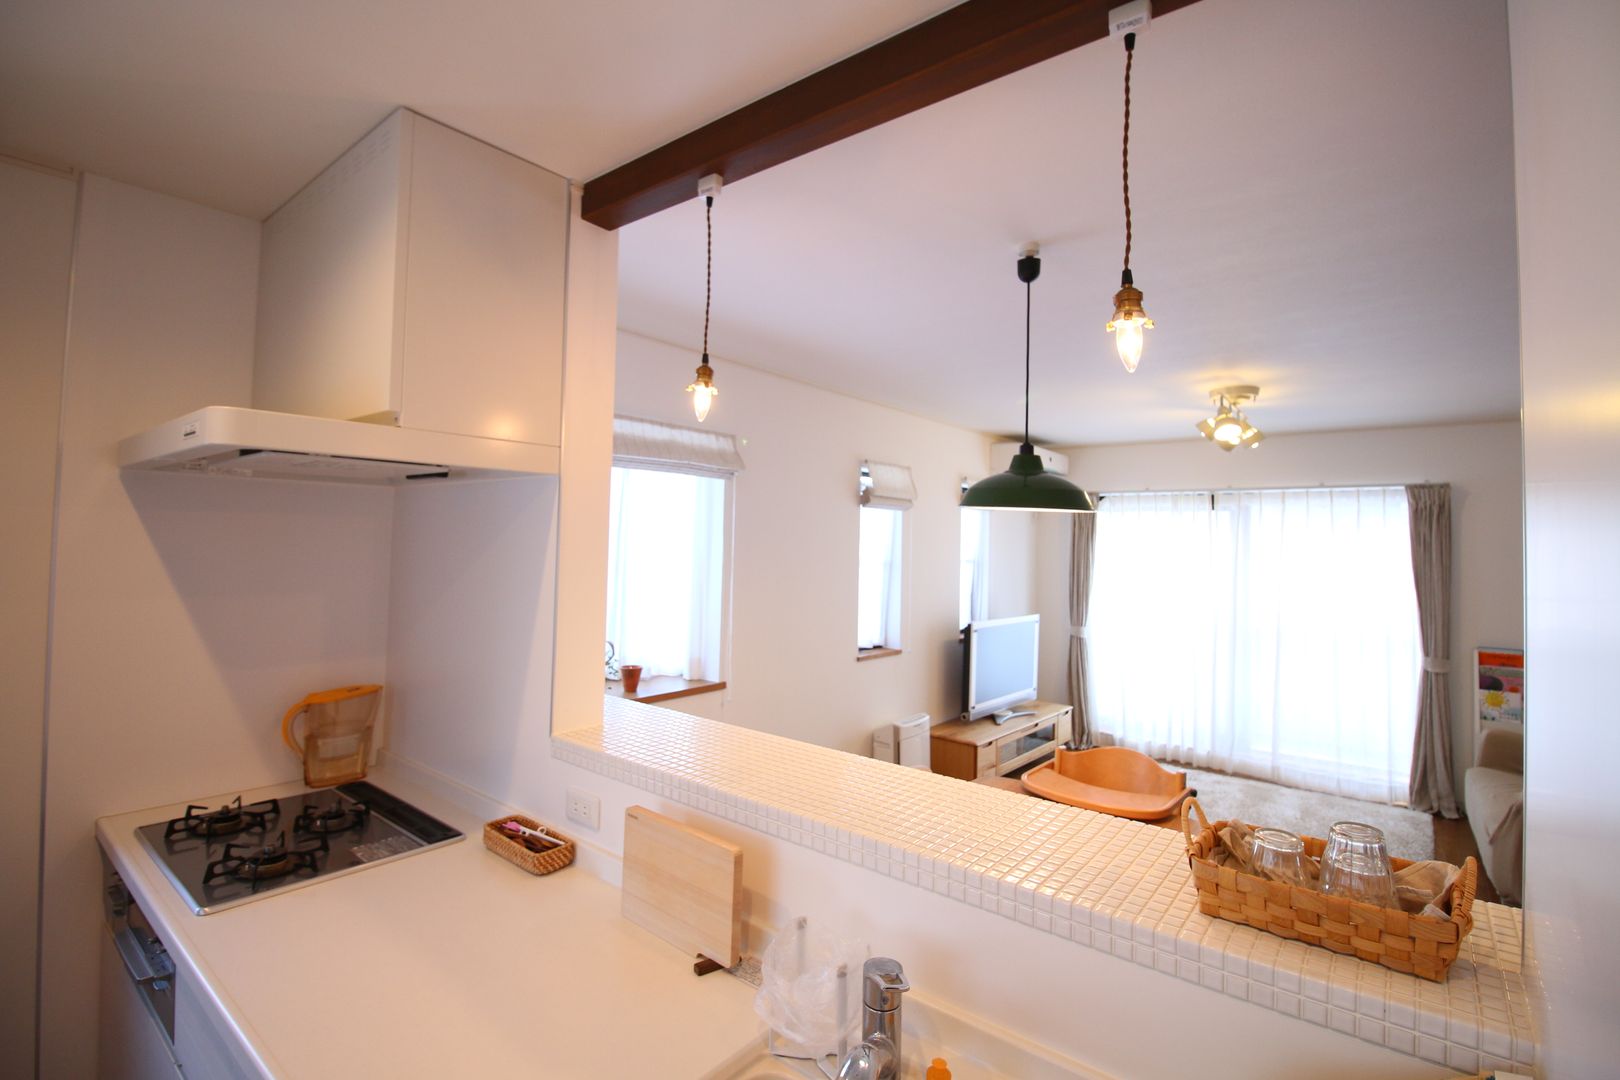 アーチを取り入れた可愛らしさのある “ポップ×シンプル” フルリノベーション, いえラボ いえラボ Scandinavian style kitchen